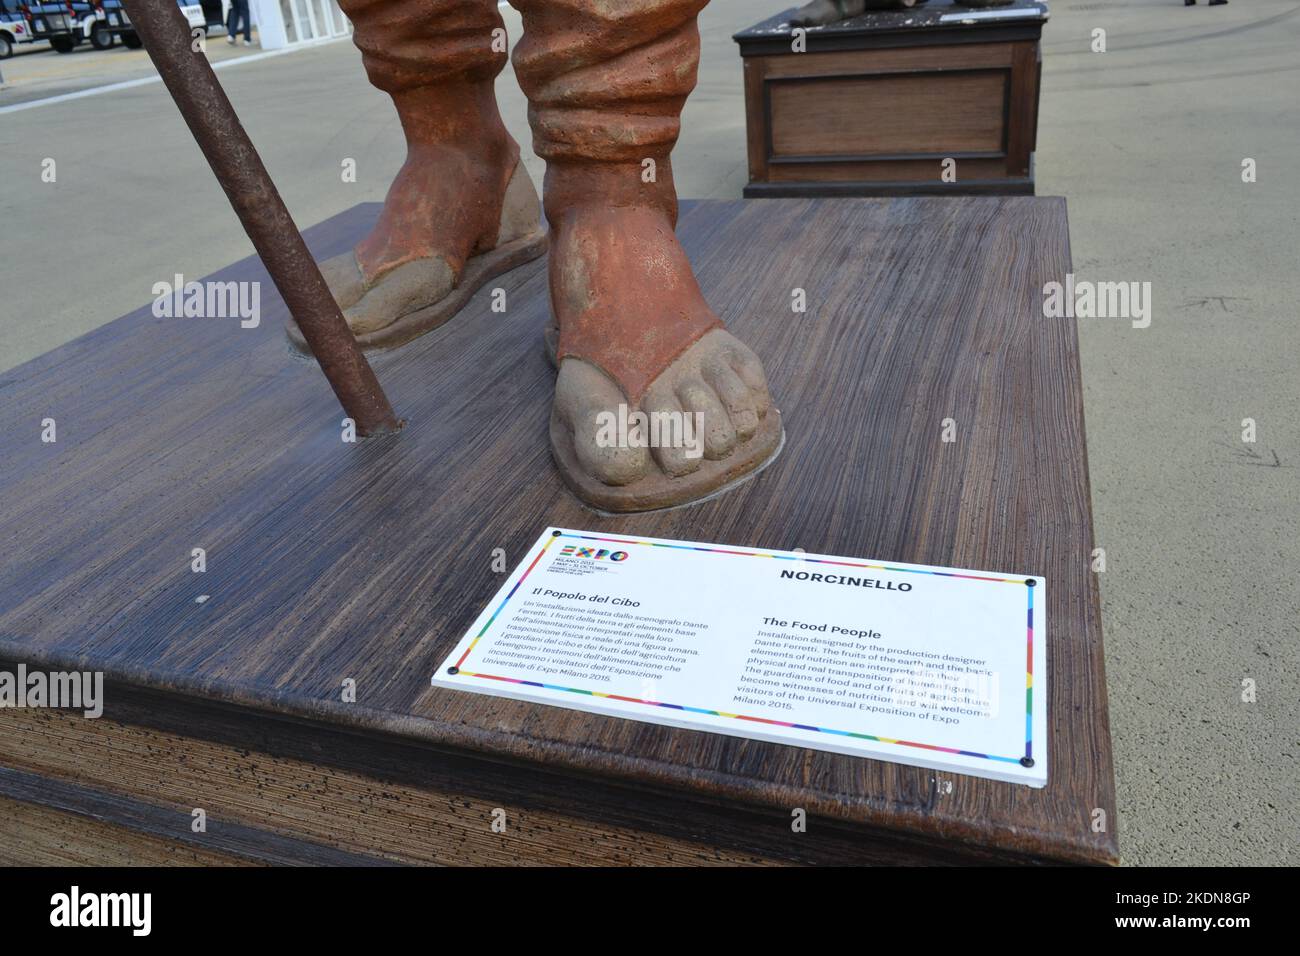 Milan, Italie - 21 août 2015: Détail de la statue du caractère Norcinello des gens de la nourriture de l'Expo Milano 2015. Pieds avec sandales . Banque D'Images